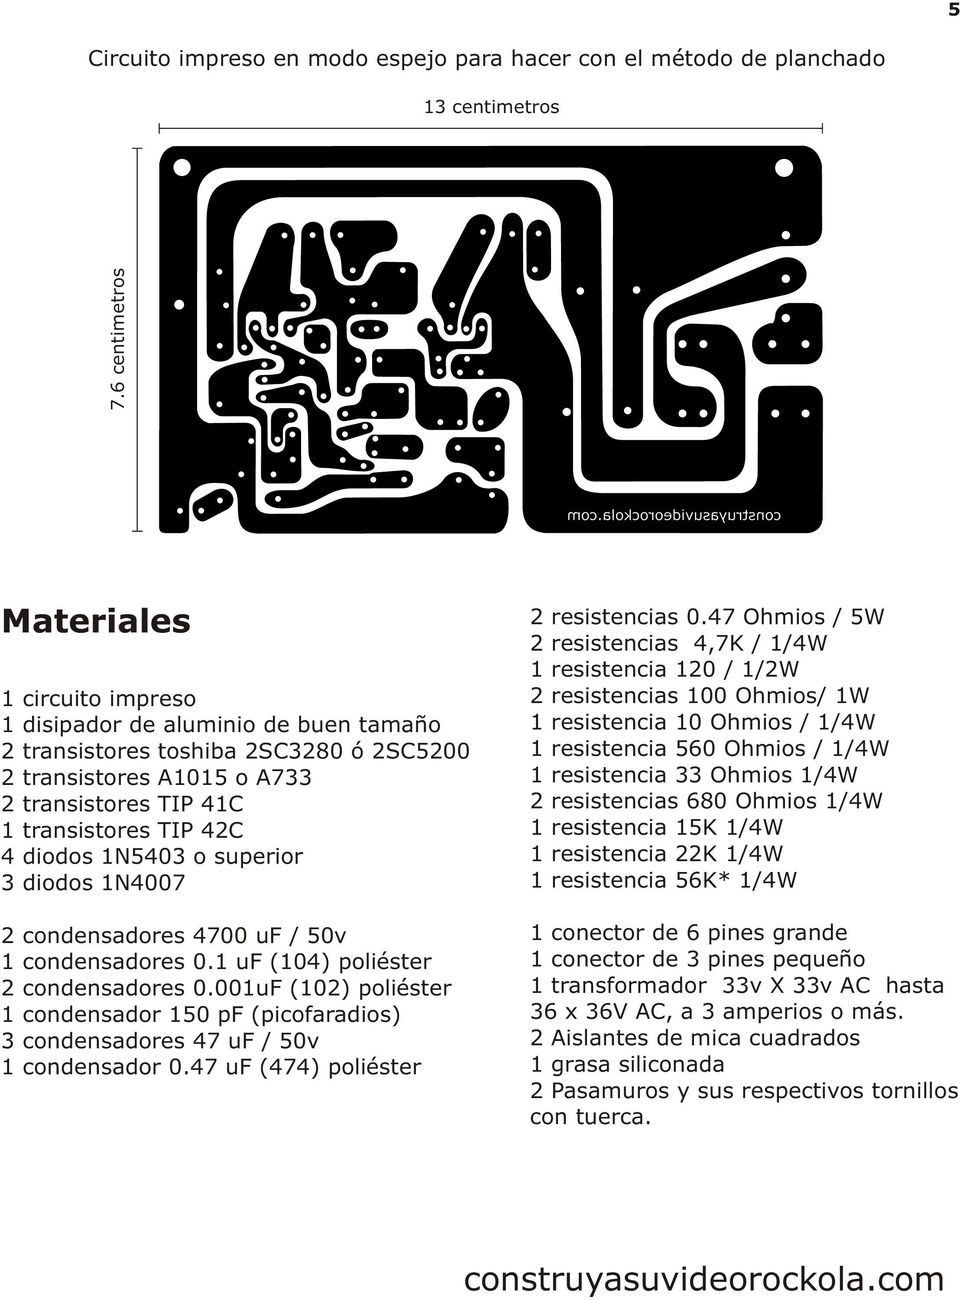 o superior 3 diodos 2 condensadores / 50v 1 condensadores 0.1 uf (4) poliéster 2 condensadores uf (2) poliéster 1 condensador (picofaradios) 3 condensadores / 50v 1 condensador 0.